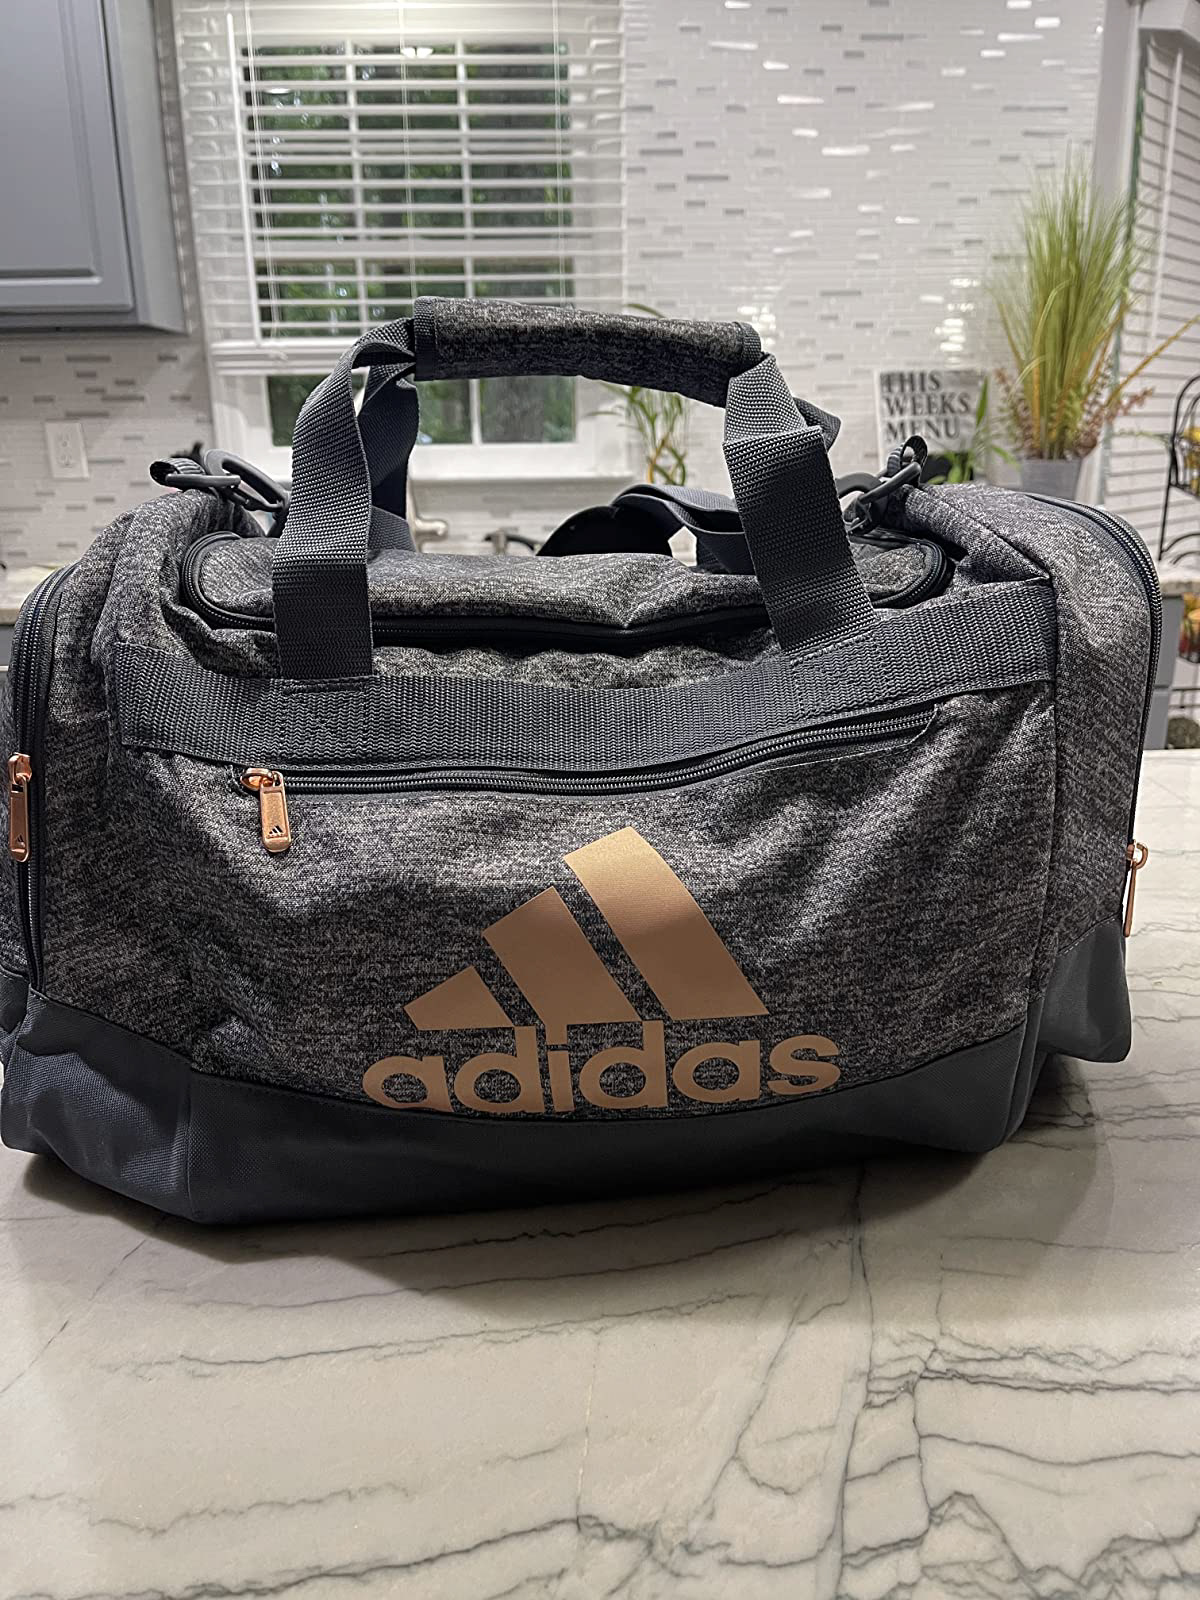 adidas bag duffel Travel